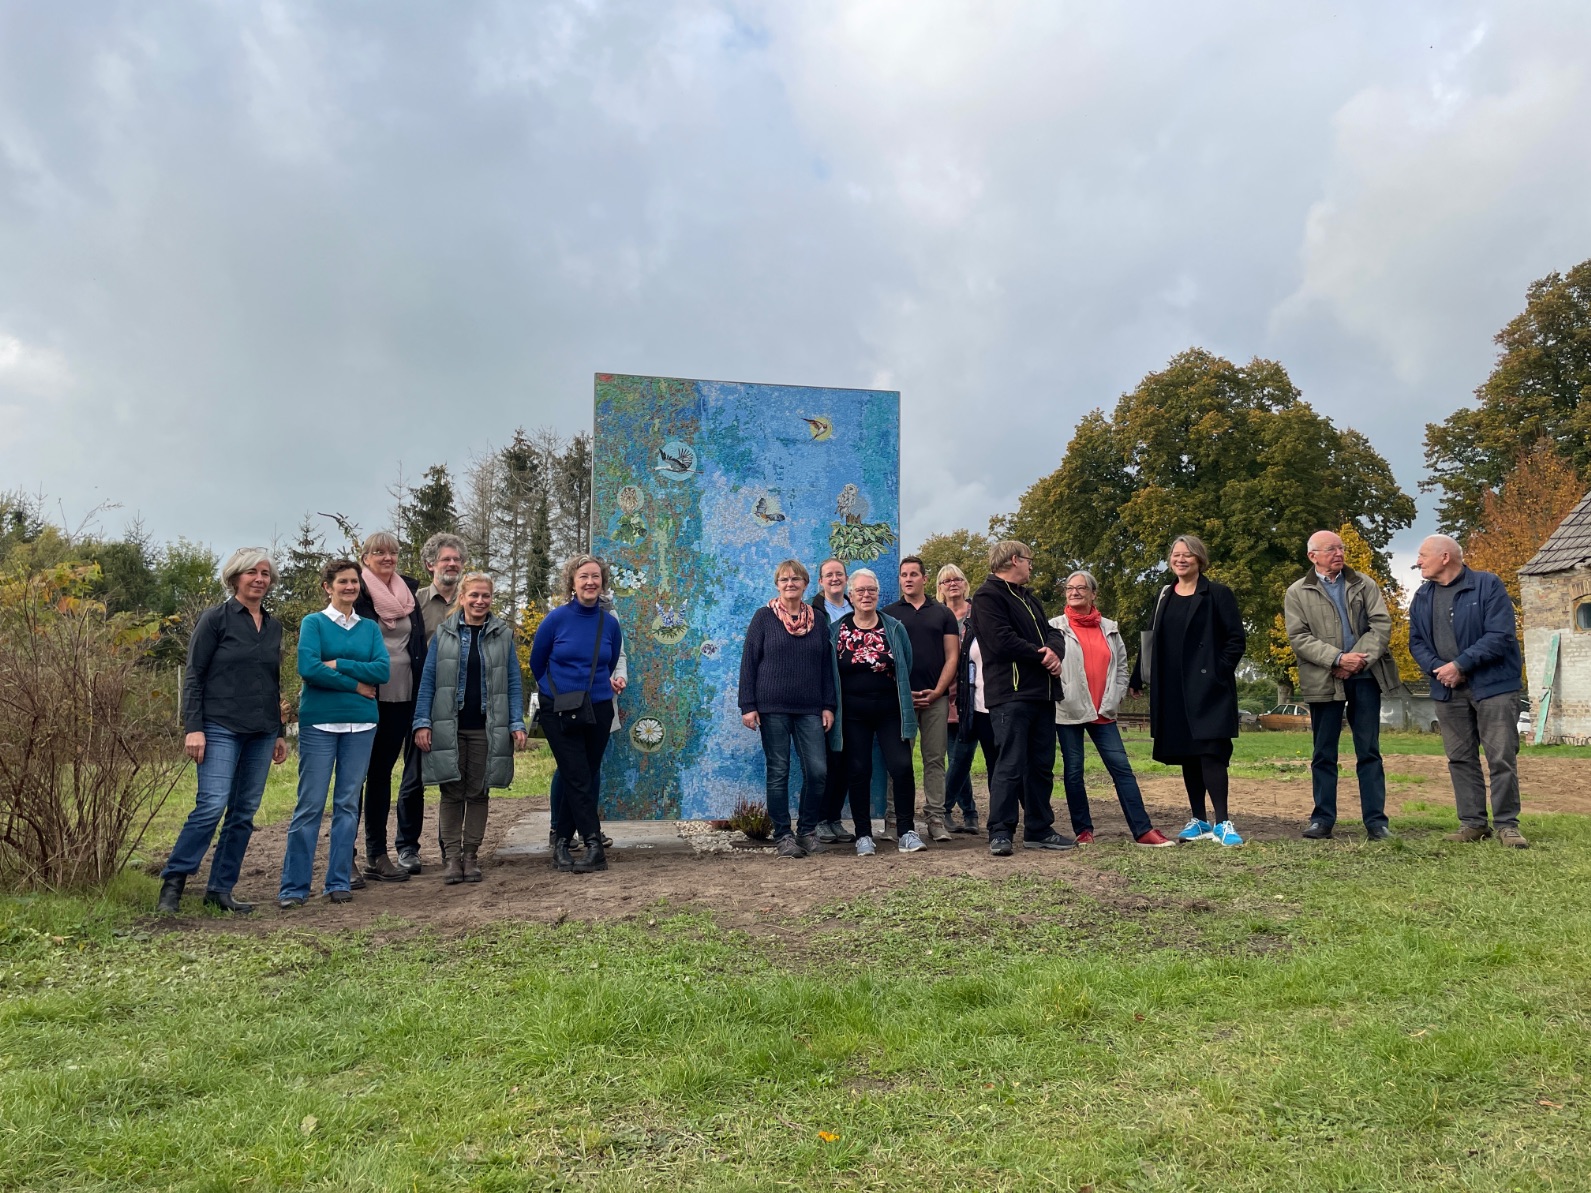 Gruppenfoto der Auftraggebergruppe vor dem Mosaik nach dem Entwurf „Tiere und Pflanzen in Wietstock" mit Künstlerin Antje Majewski und Mediatorin Susanne Burmester 